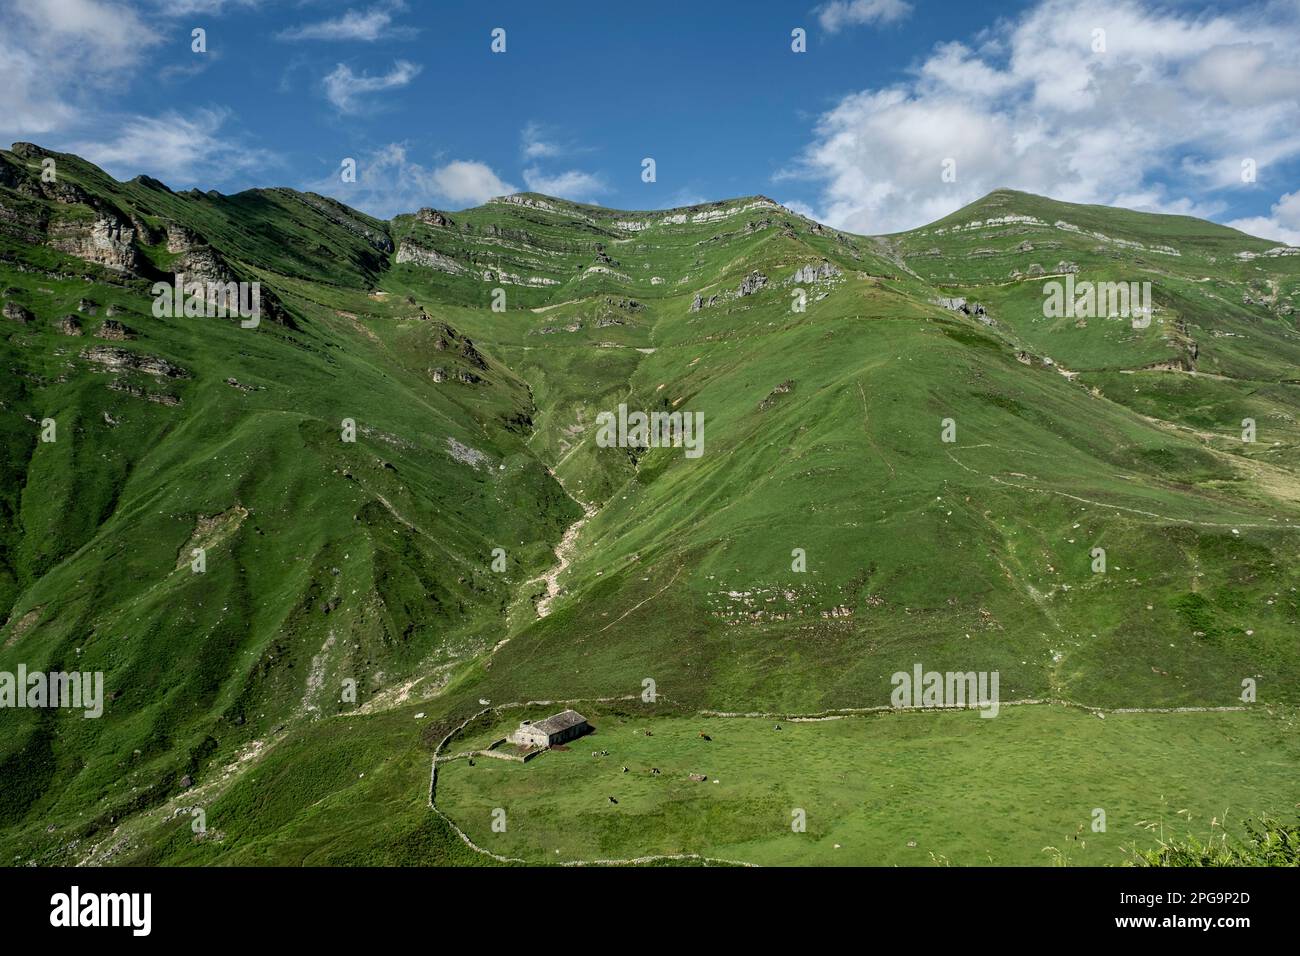 Paysage de montagne rugueux avec des pentes calcaires abruptes et des prairies verdoyantes à Valles Pasiegos, Cantabrie, nord de l'Espagne Banque D'Images